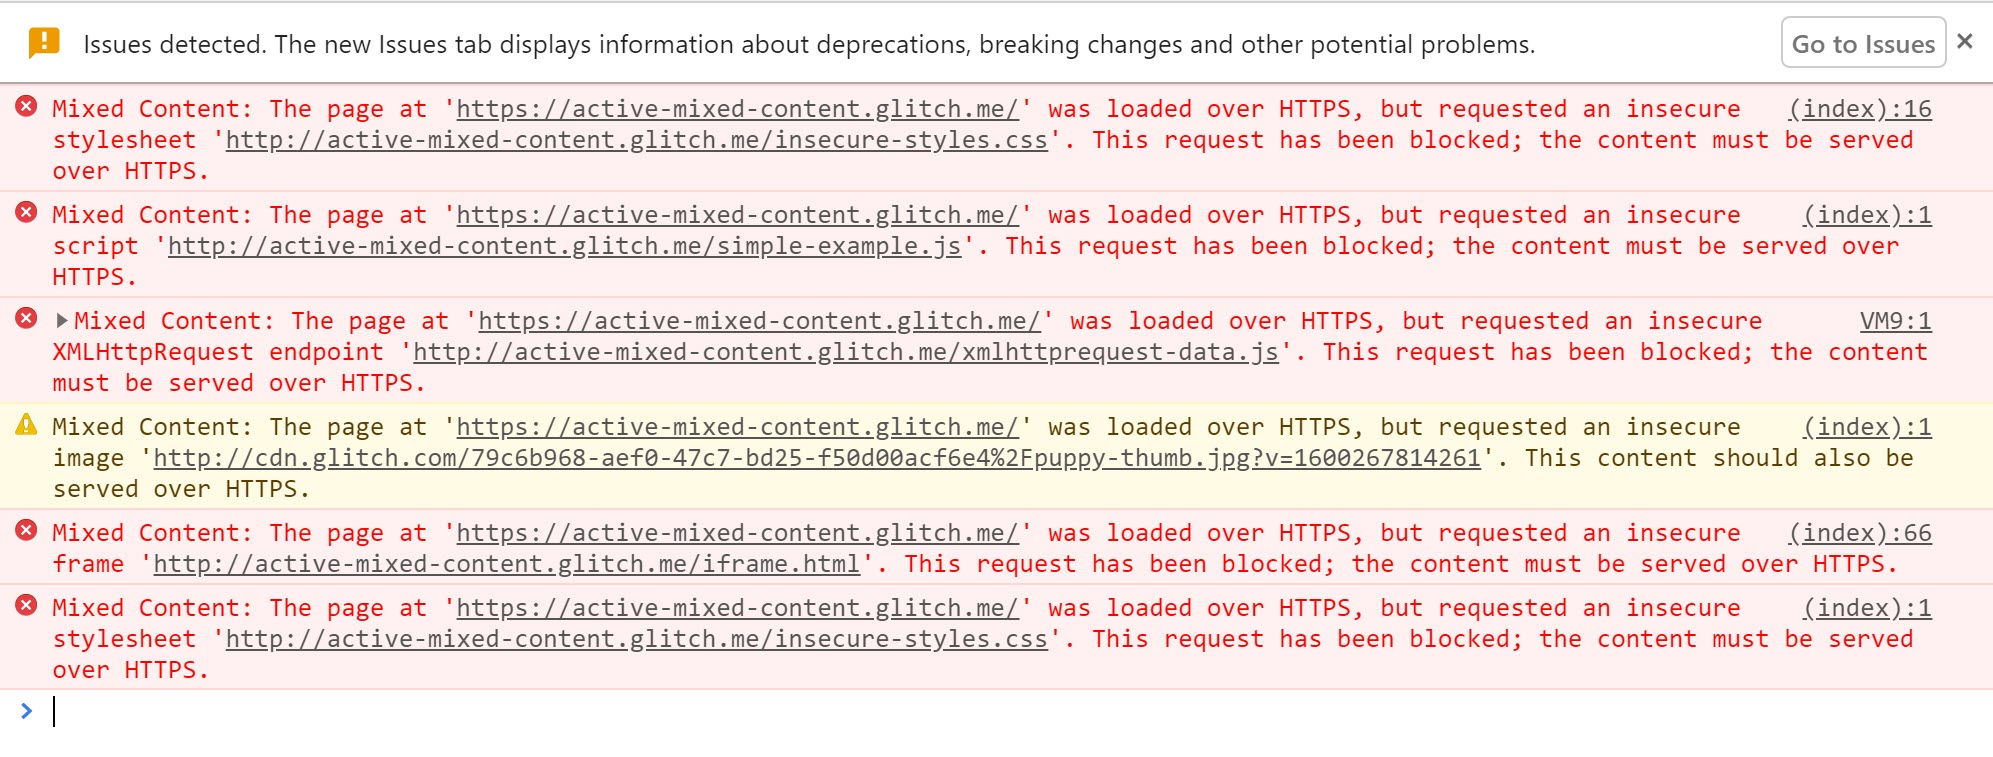 Las Herramientas para desarrolladores de Chrome muestran las advertencias que se muestran cuando se bloquea el contenido mixto activo